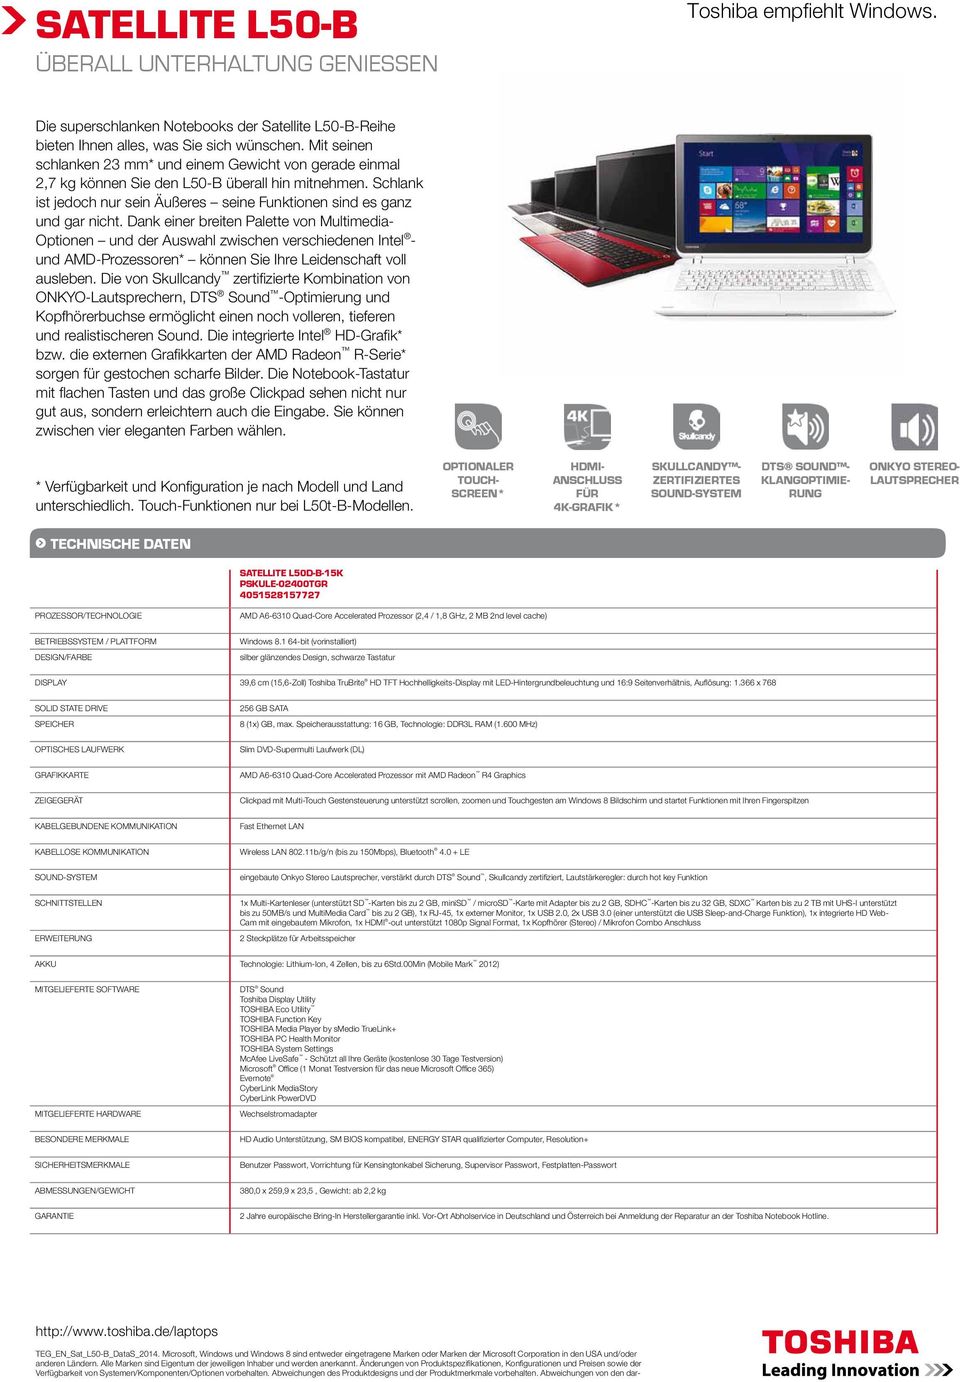 schwarze Tastatur SOLID STATE DRIVE 256 GB SATA AMD A6-6310 Quad-Core Accelerated Prozessor mit AMD Radeon R4 Graphics eingebaute Onkyo Stereo Lautsprecher, verstärkt durch, Skullcandy zertiiziert,